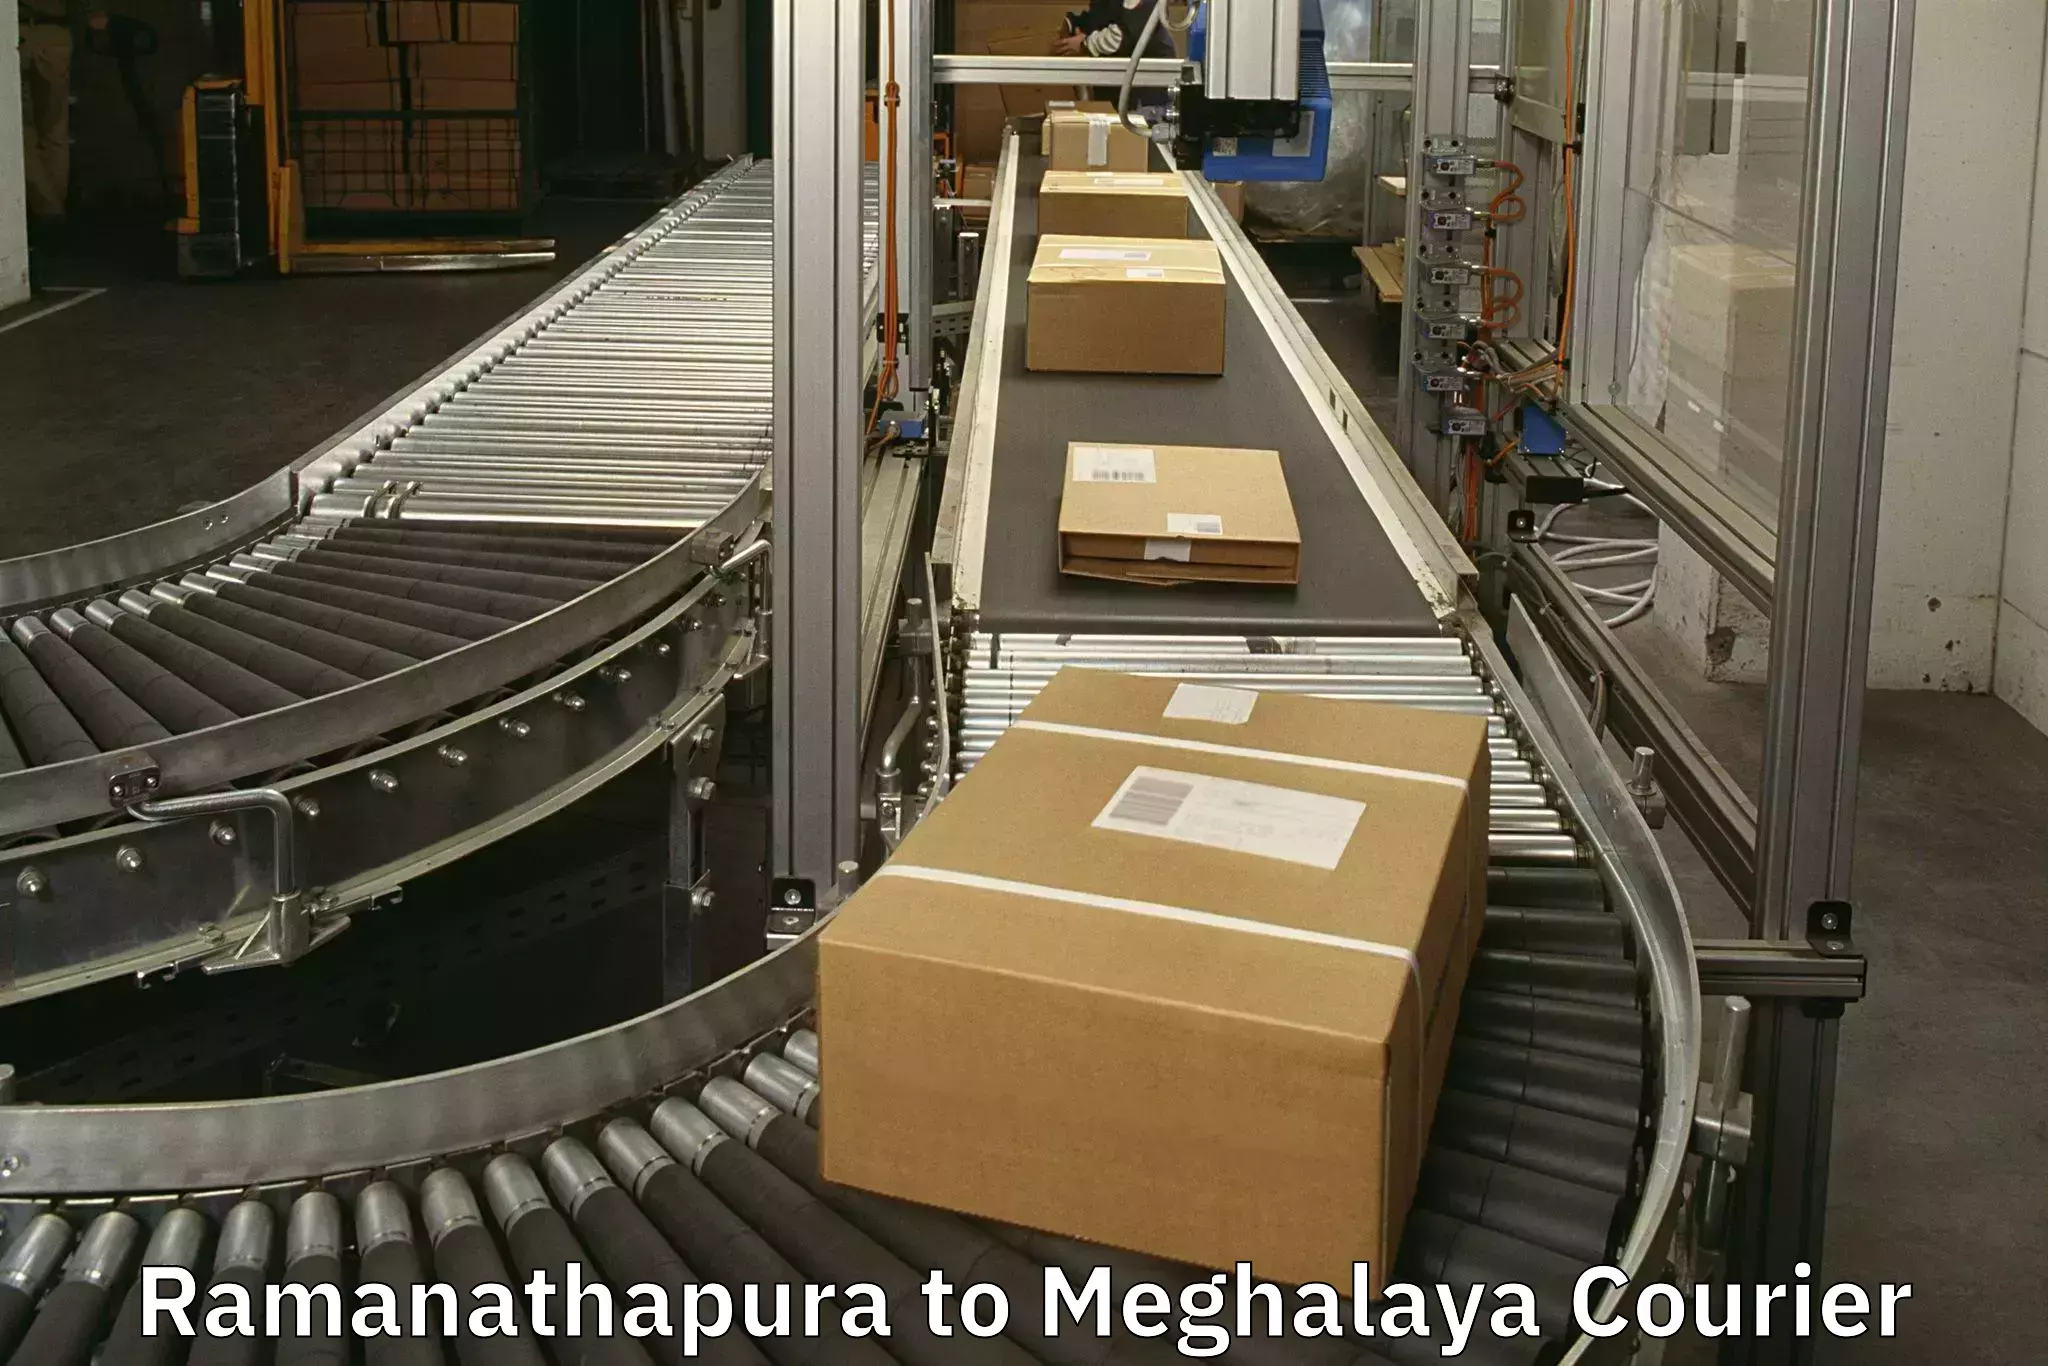 Baggage shipping service Ramanathapura to Meghalaya